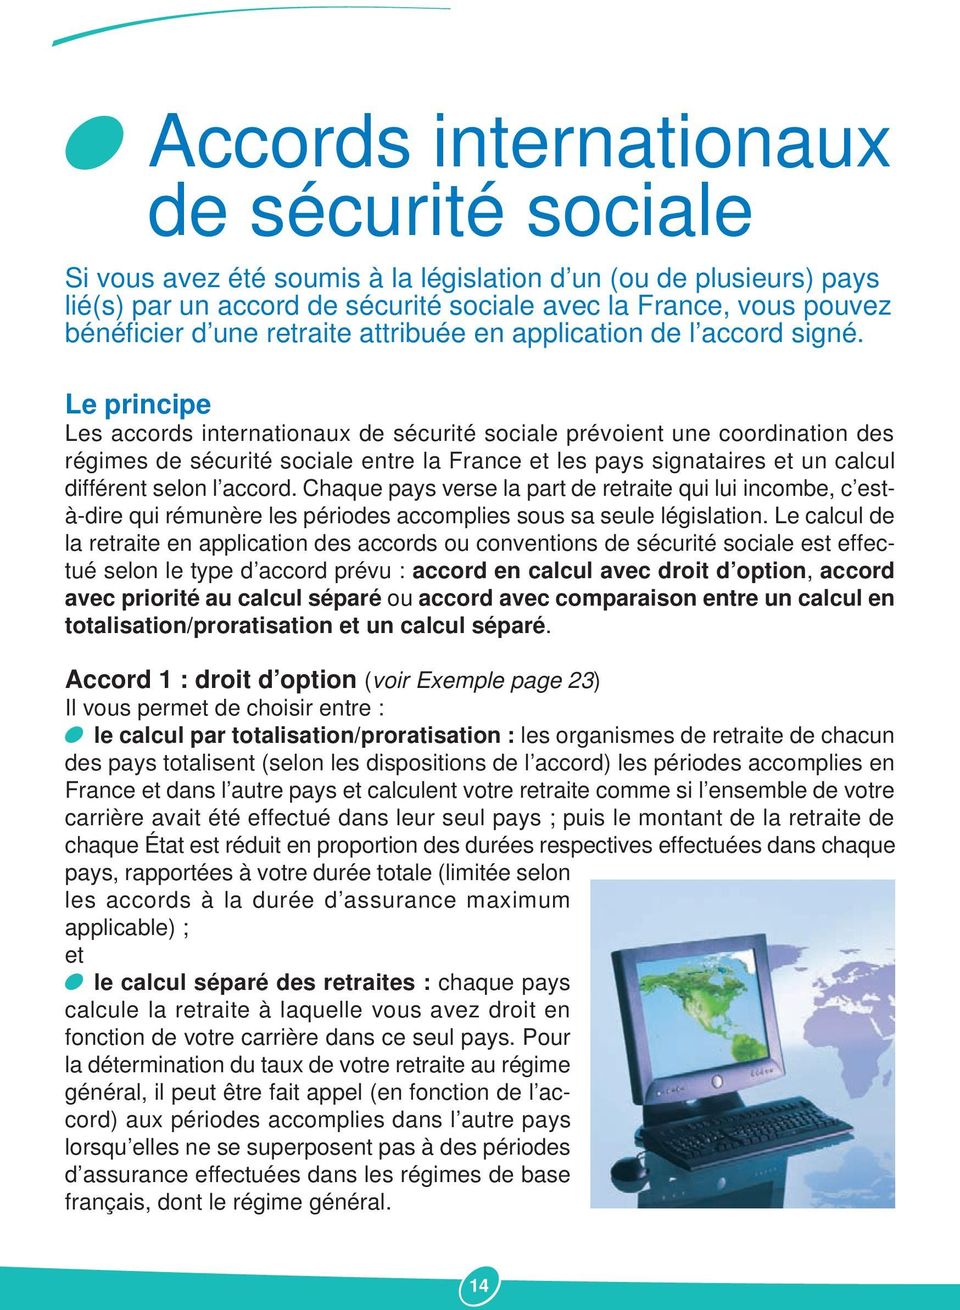 Le principe Les accords internationaux de sécurité sociale prévoient une coordination des régimes de sécurité sociale entre la France et les pays signataires et un calcul différent selon l accord.